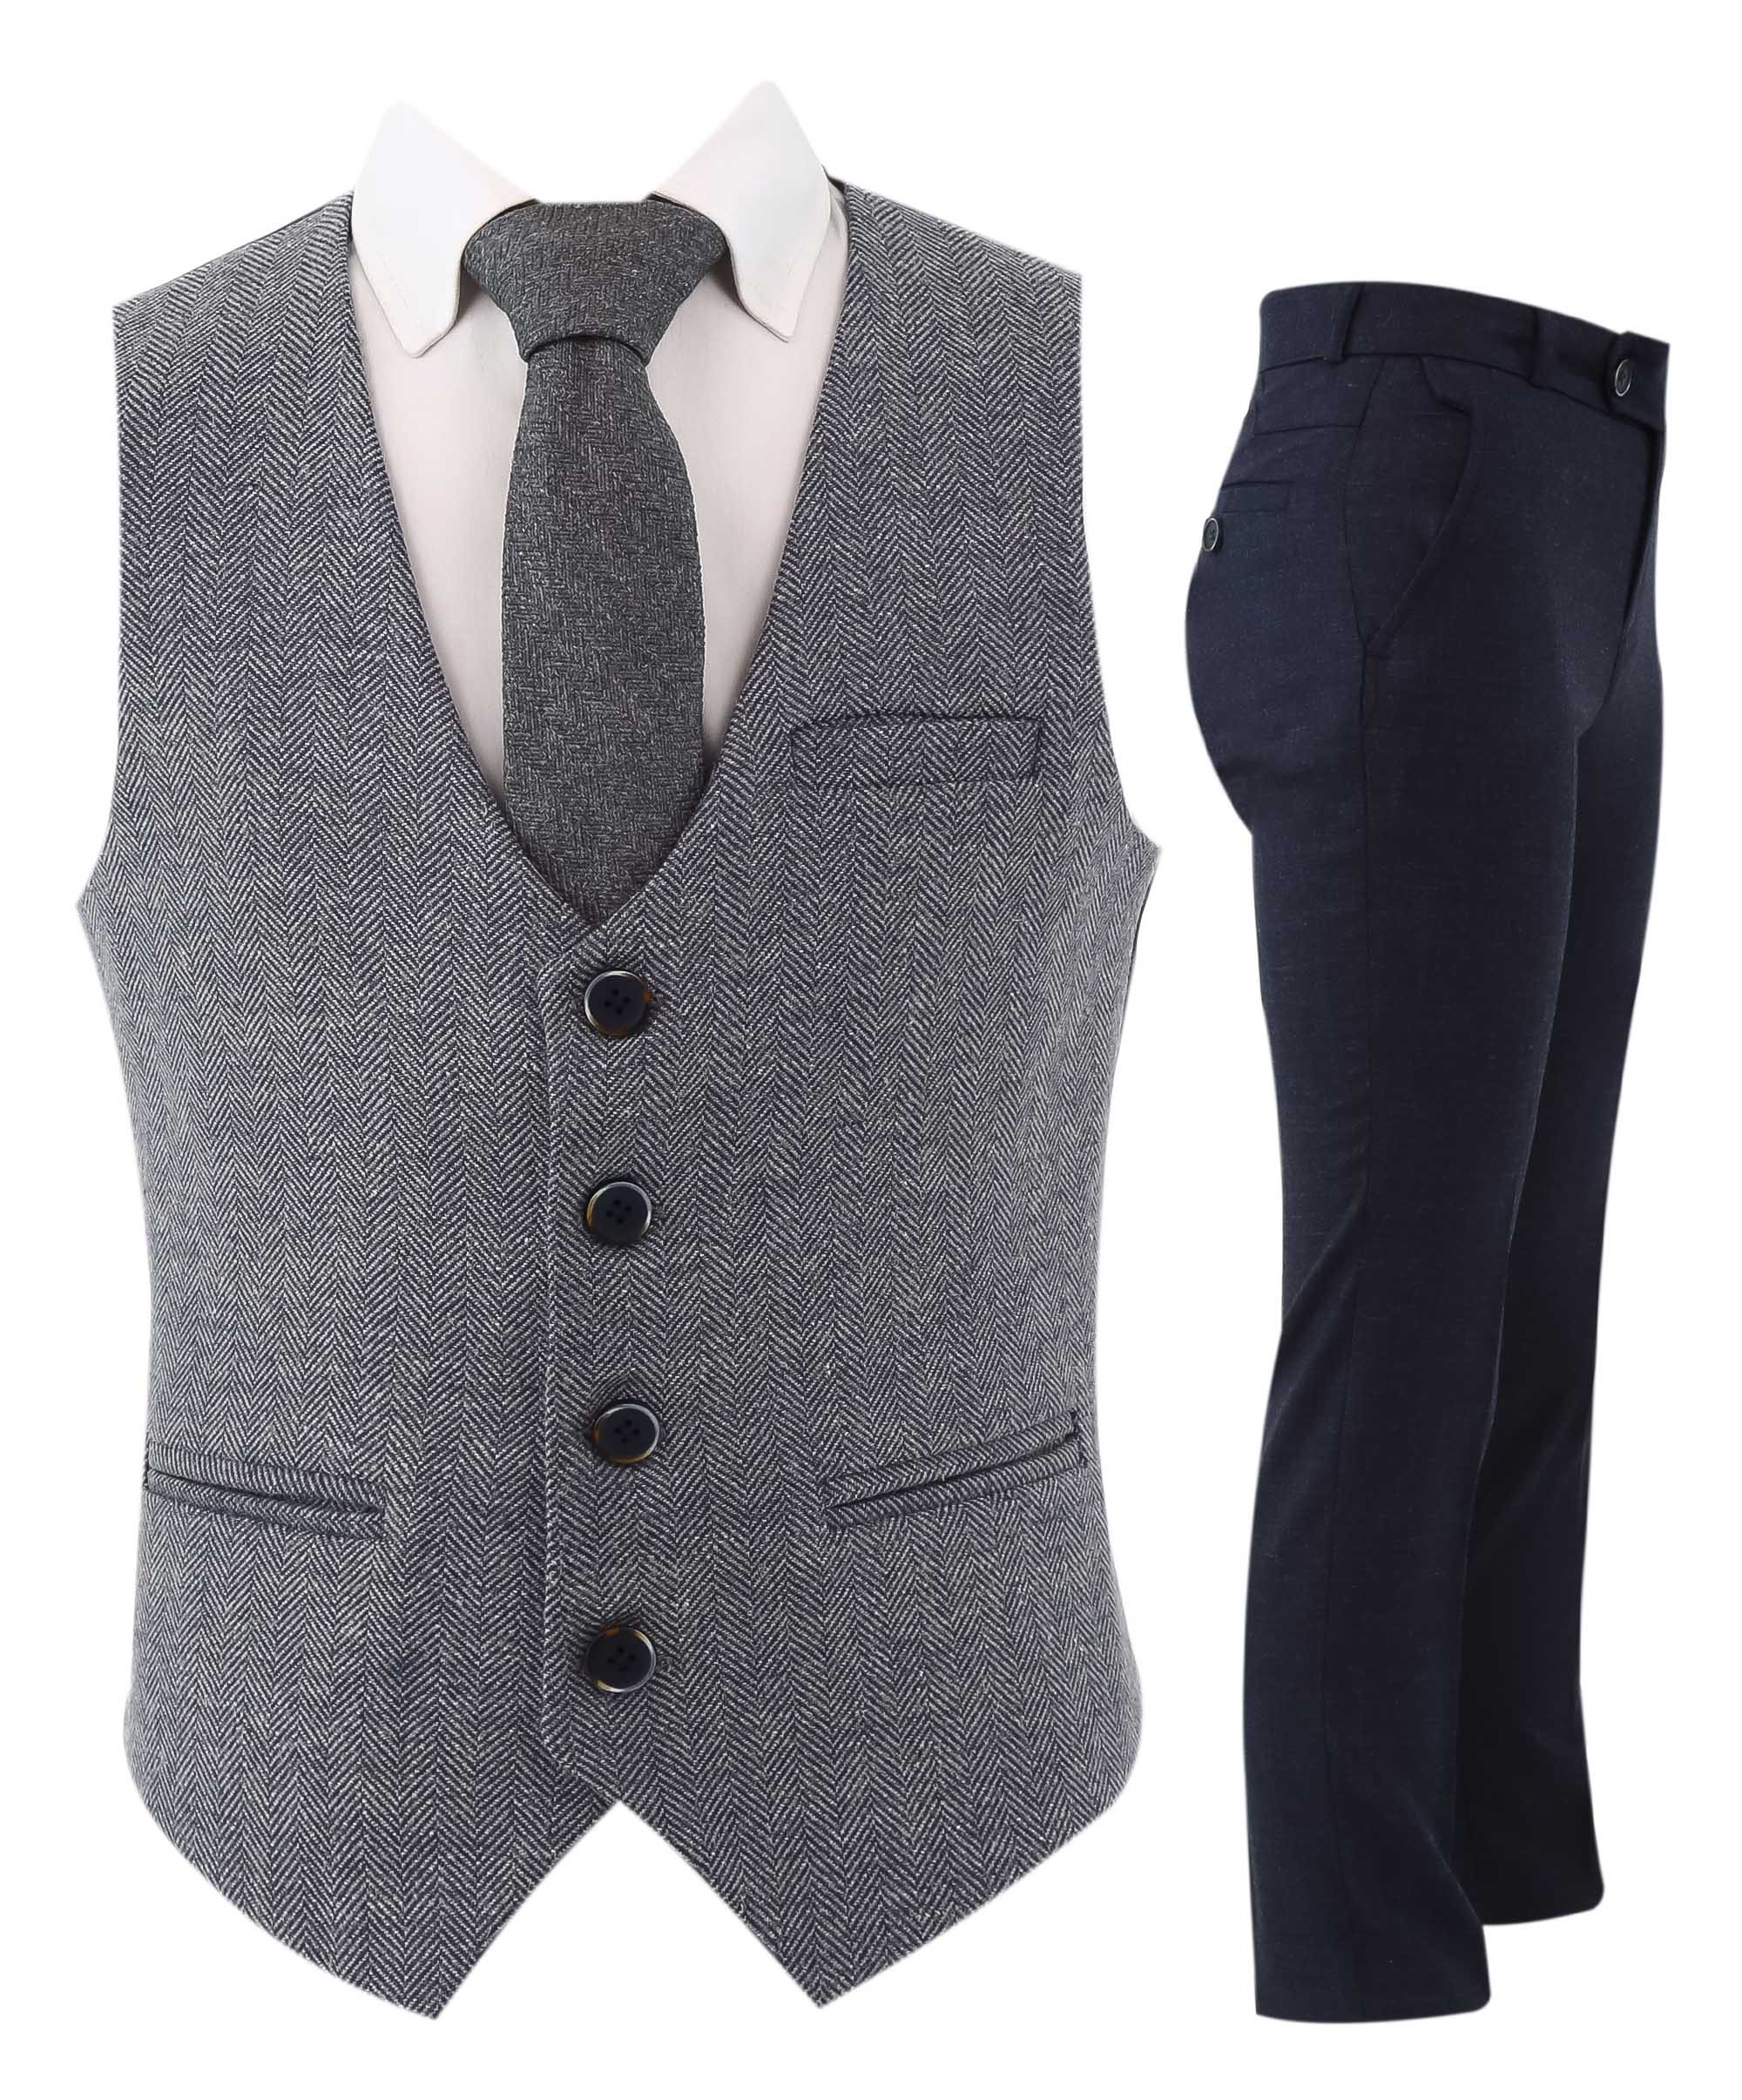 Boys Herringbone Tweed Waistcoat Suit - Navy Blue